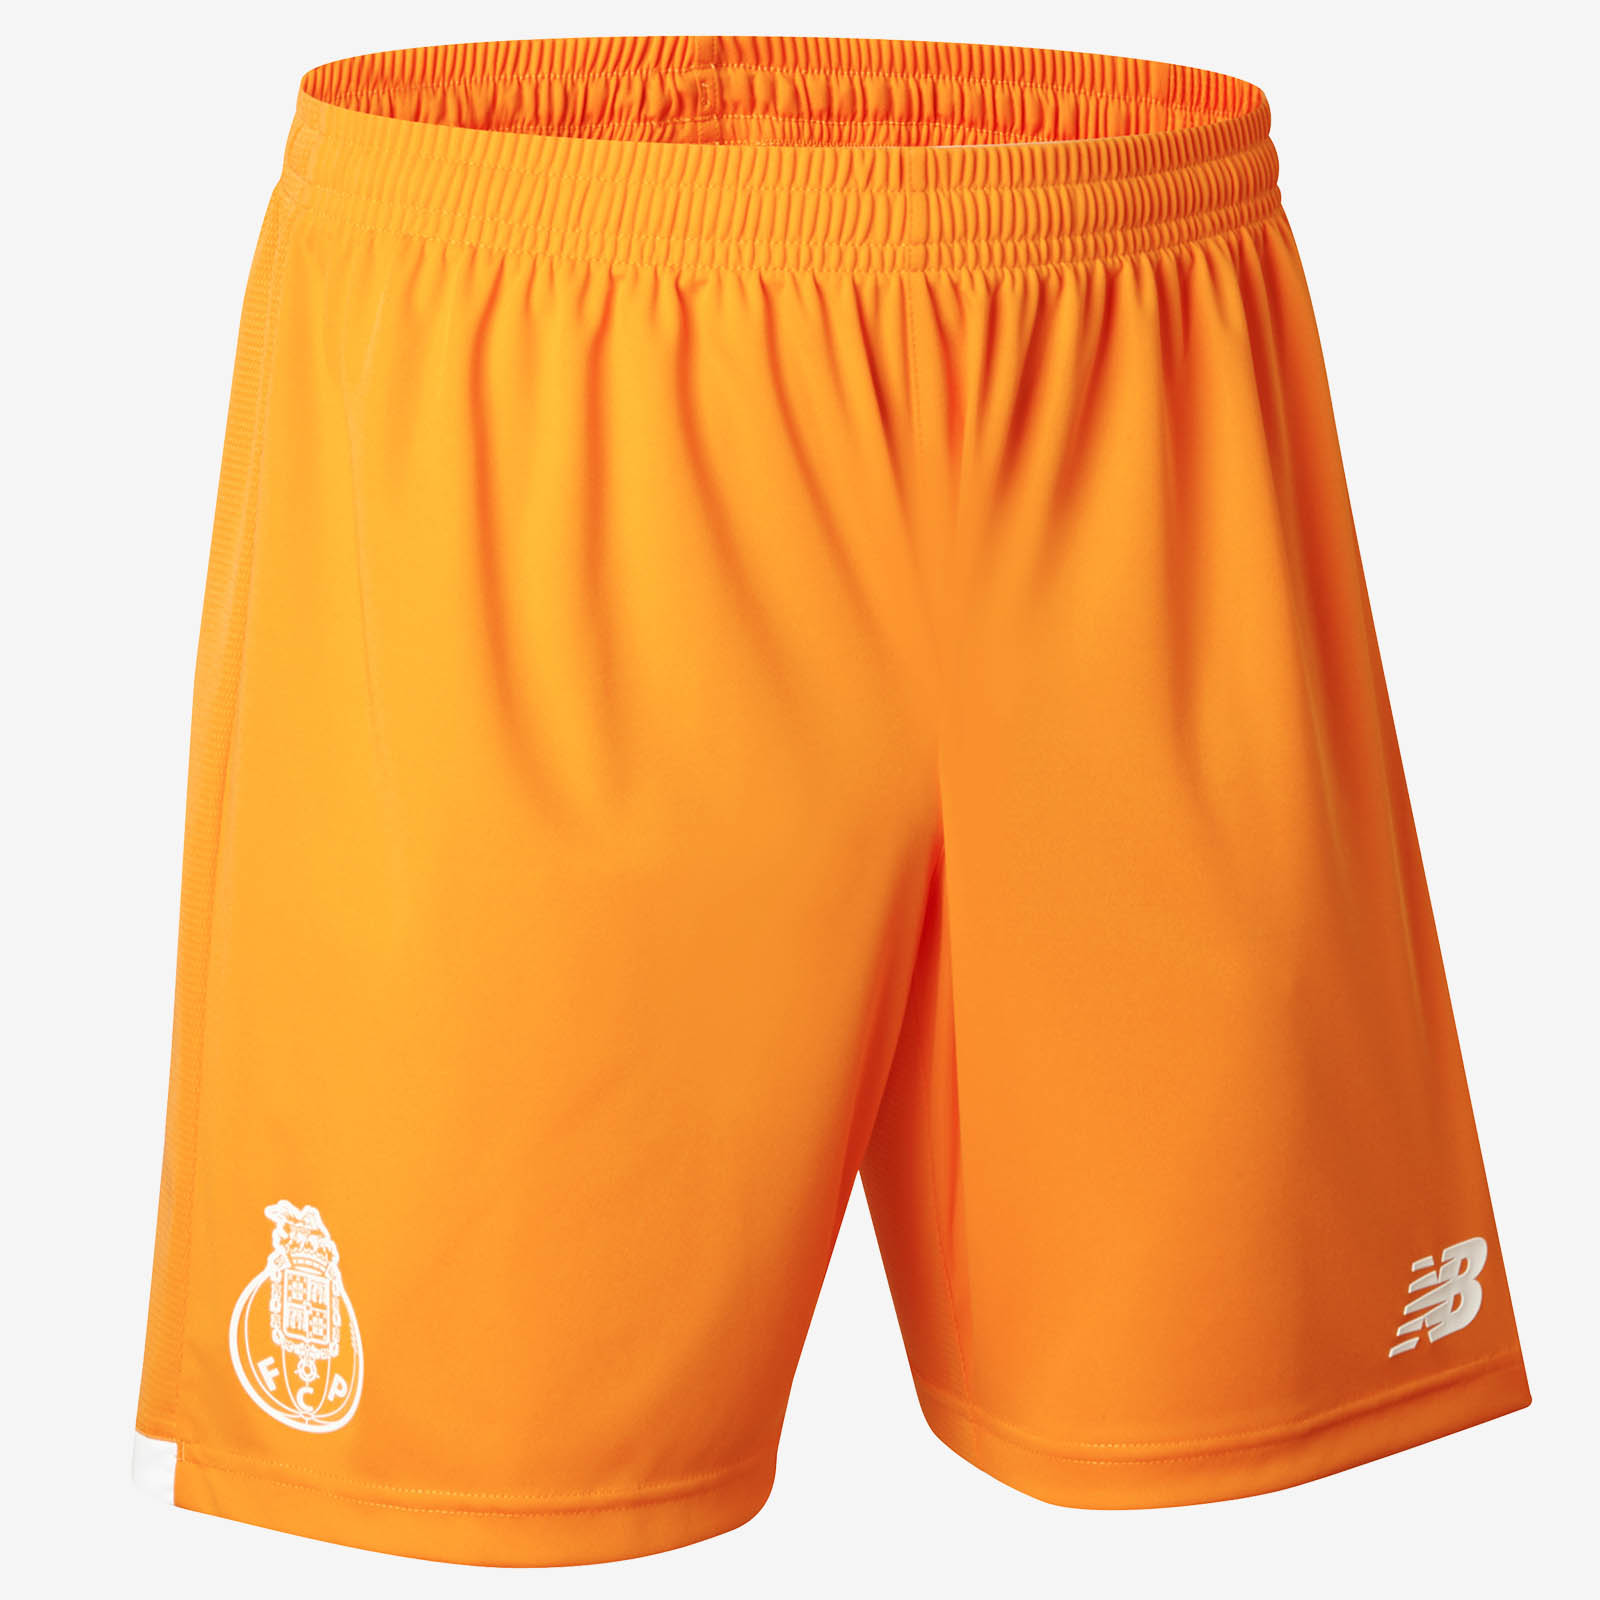 Шорты футболистов. Униформа футбола шорты. Футболисты в шортах. Футбольные шорты с узором. Футбольная форма оранжевая футболка серые шорты.